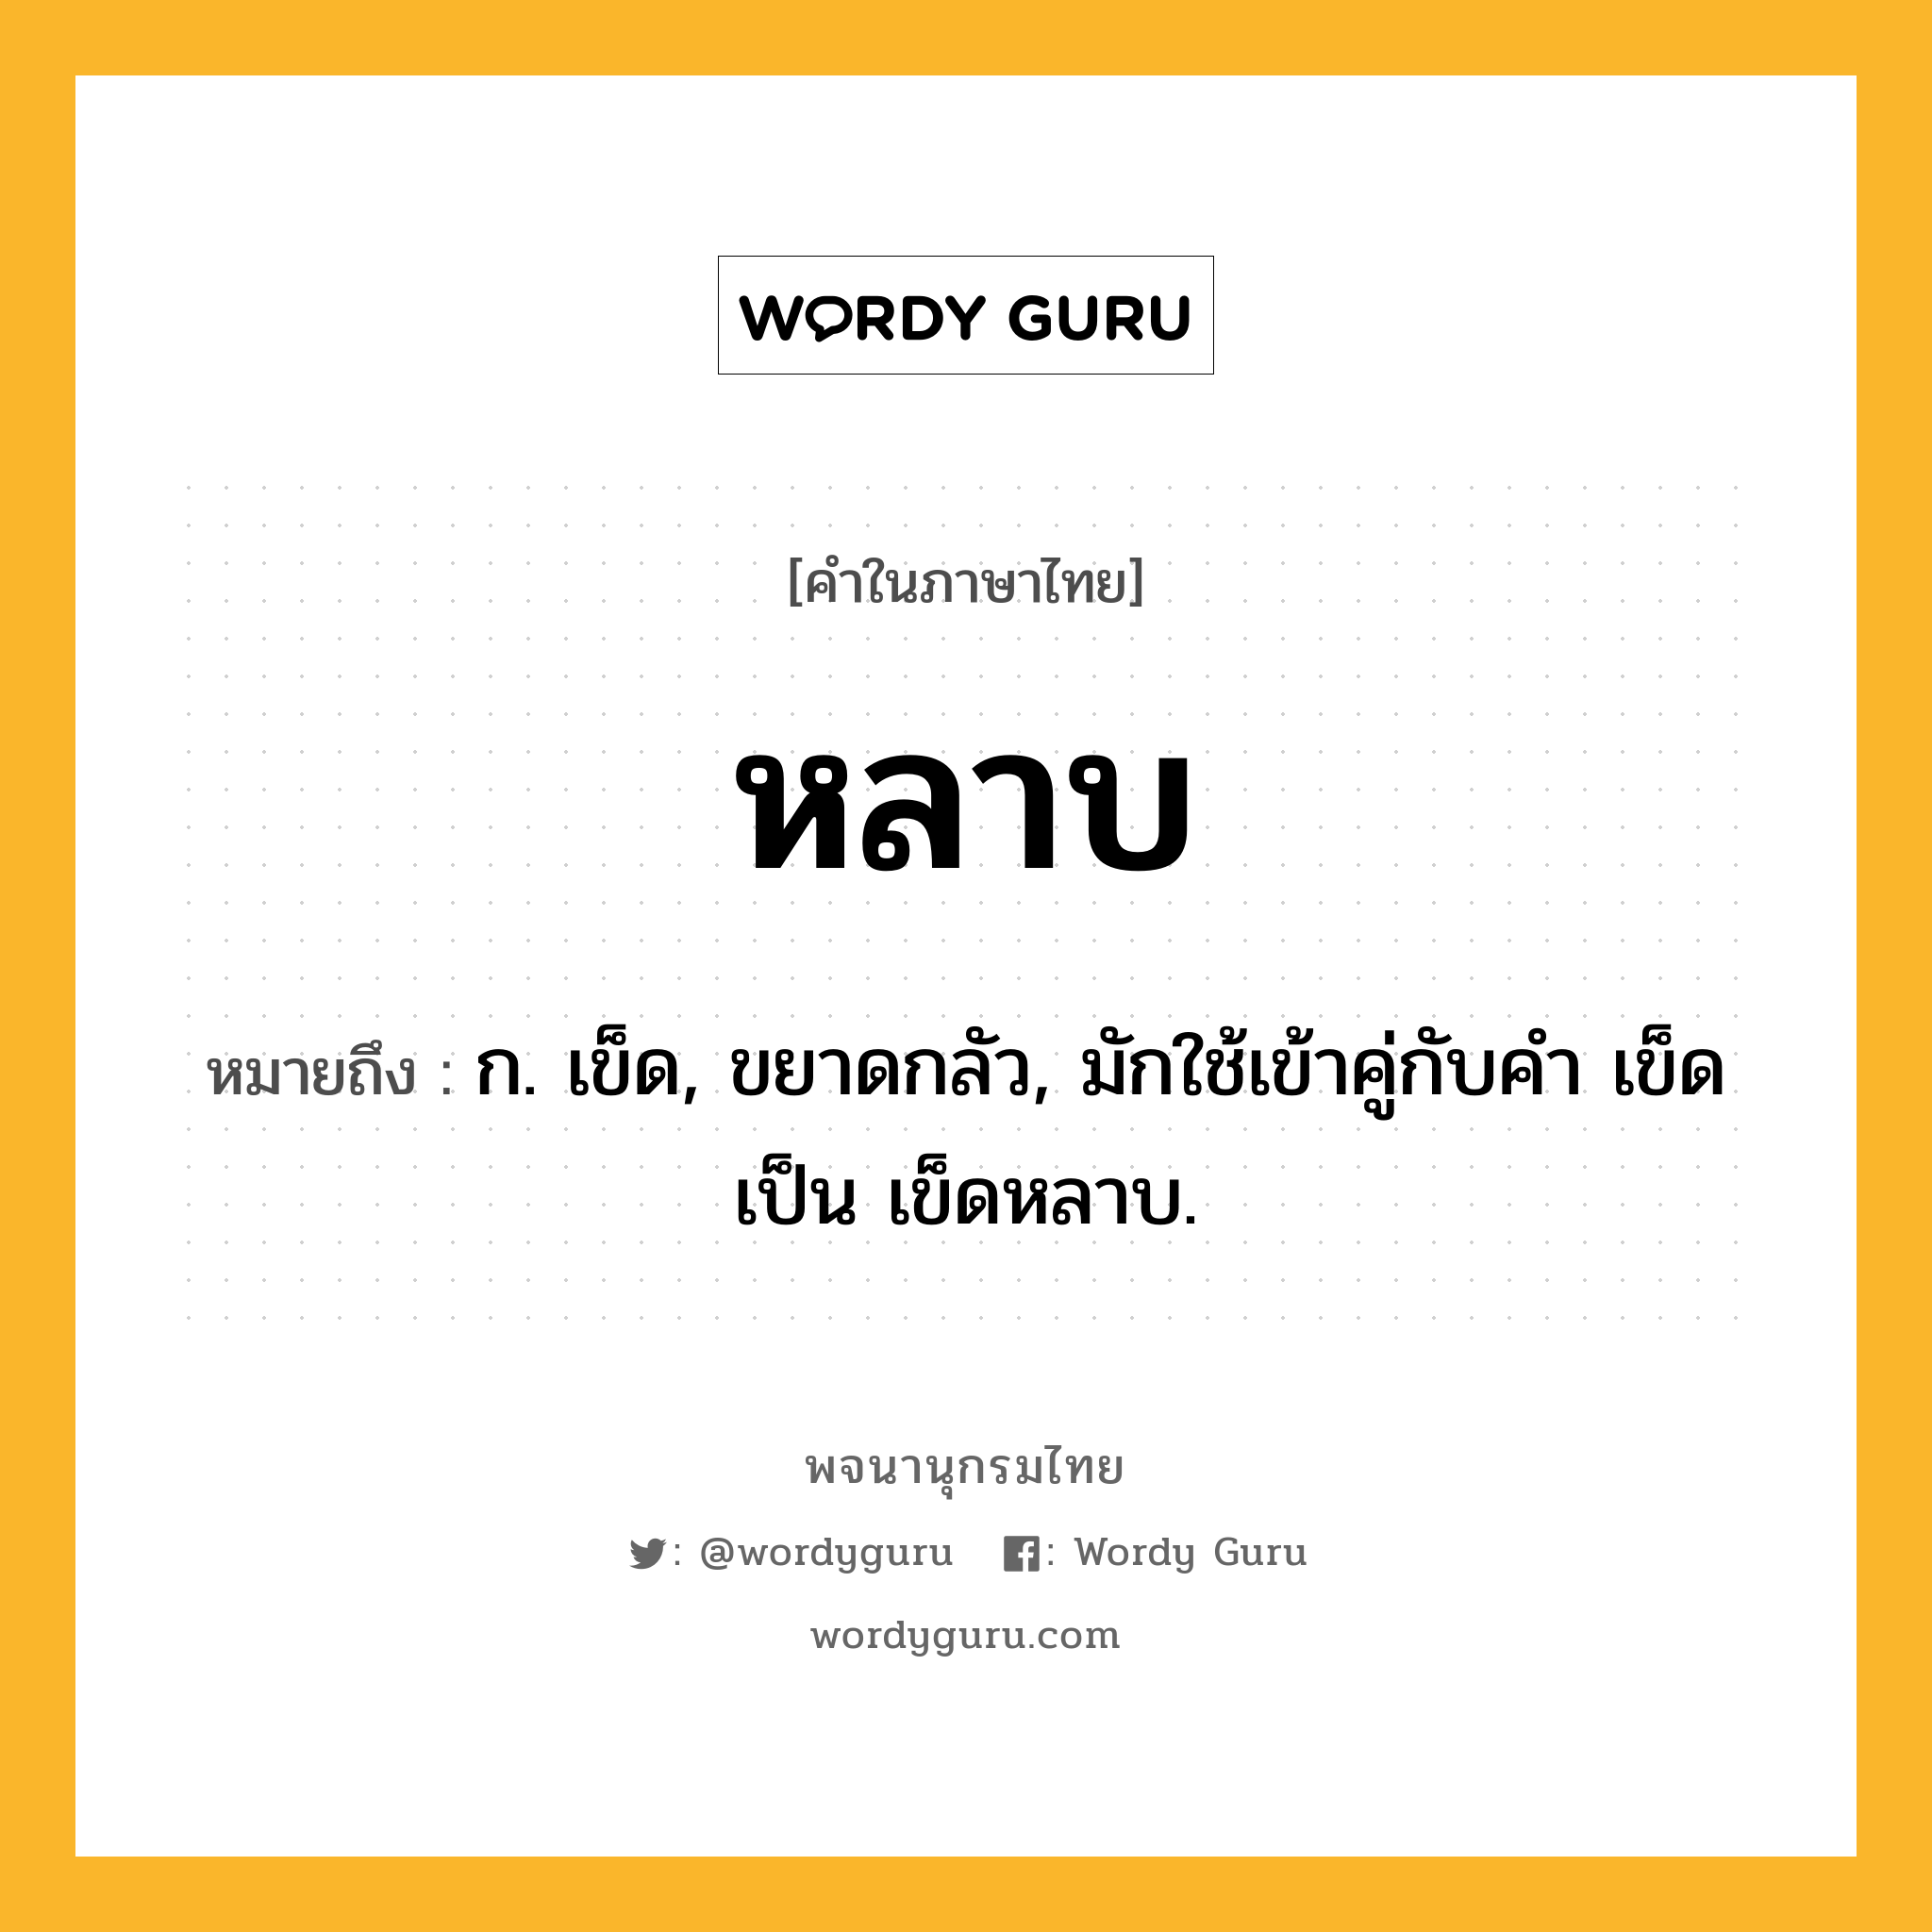 หลาบ หมายถึงอะไร?, คำในภาษาไทย หลาบ หมายถึง ก. เข็ด, ขยาดกลัว, มักใช้เข้าคู่กับคำ เข็ด เป็น เข็ดหลาบ.